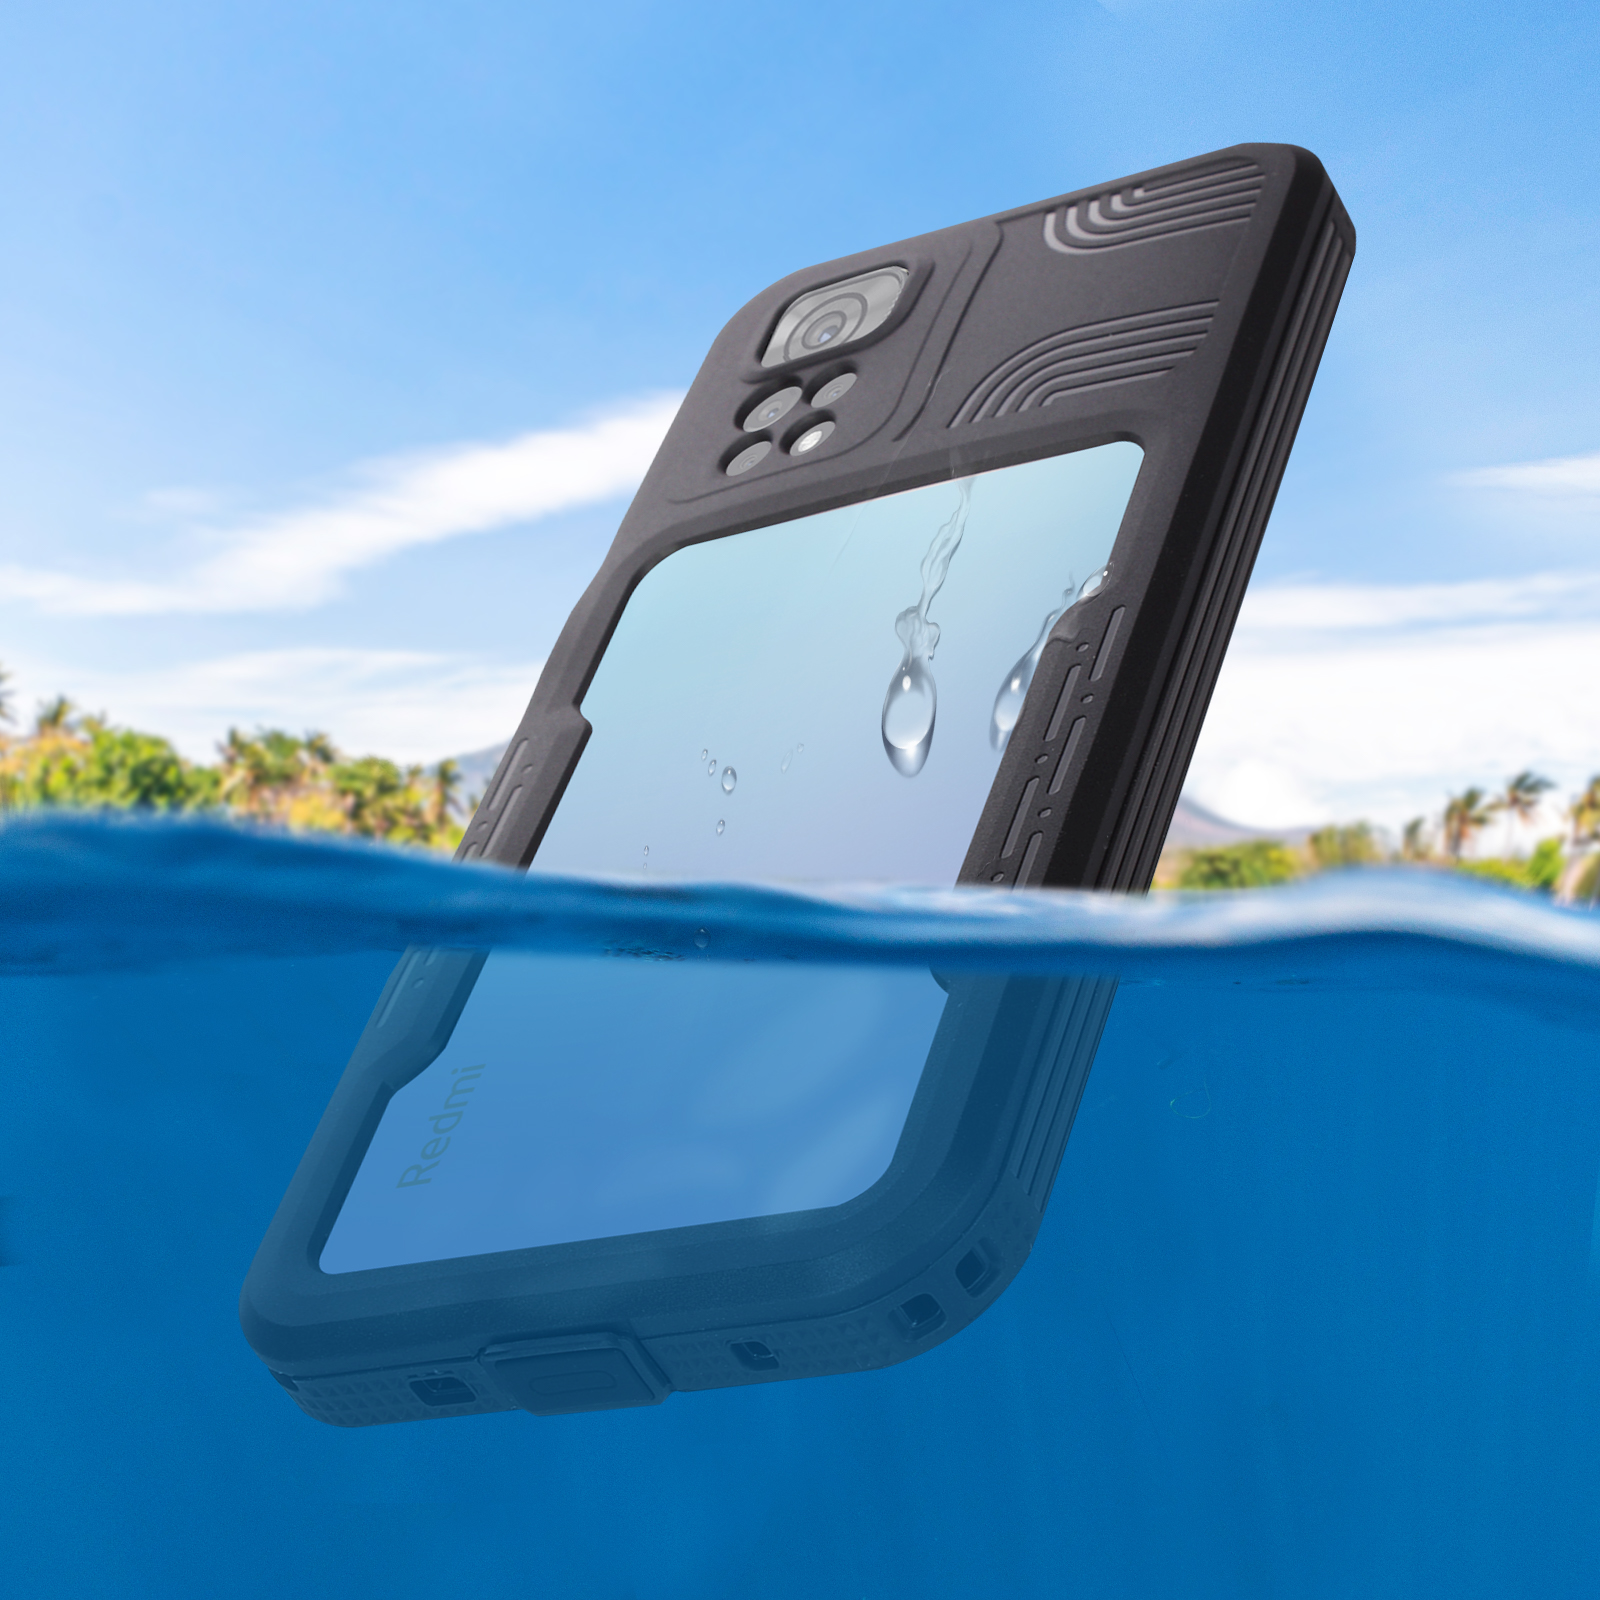 Transparent Redmi Schutz Series, Backcover, REDPEPPER Grad IP68 Note Xiaomi, 11s, 360° Waterproof,